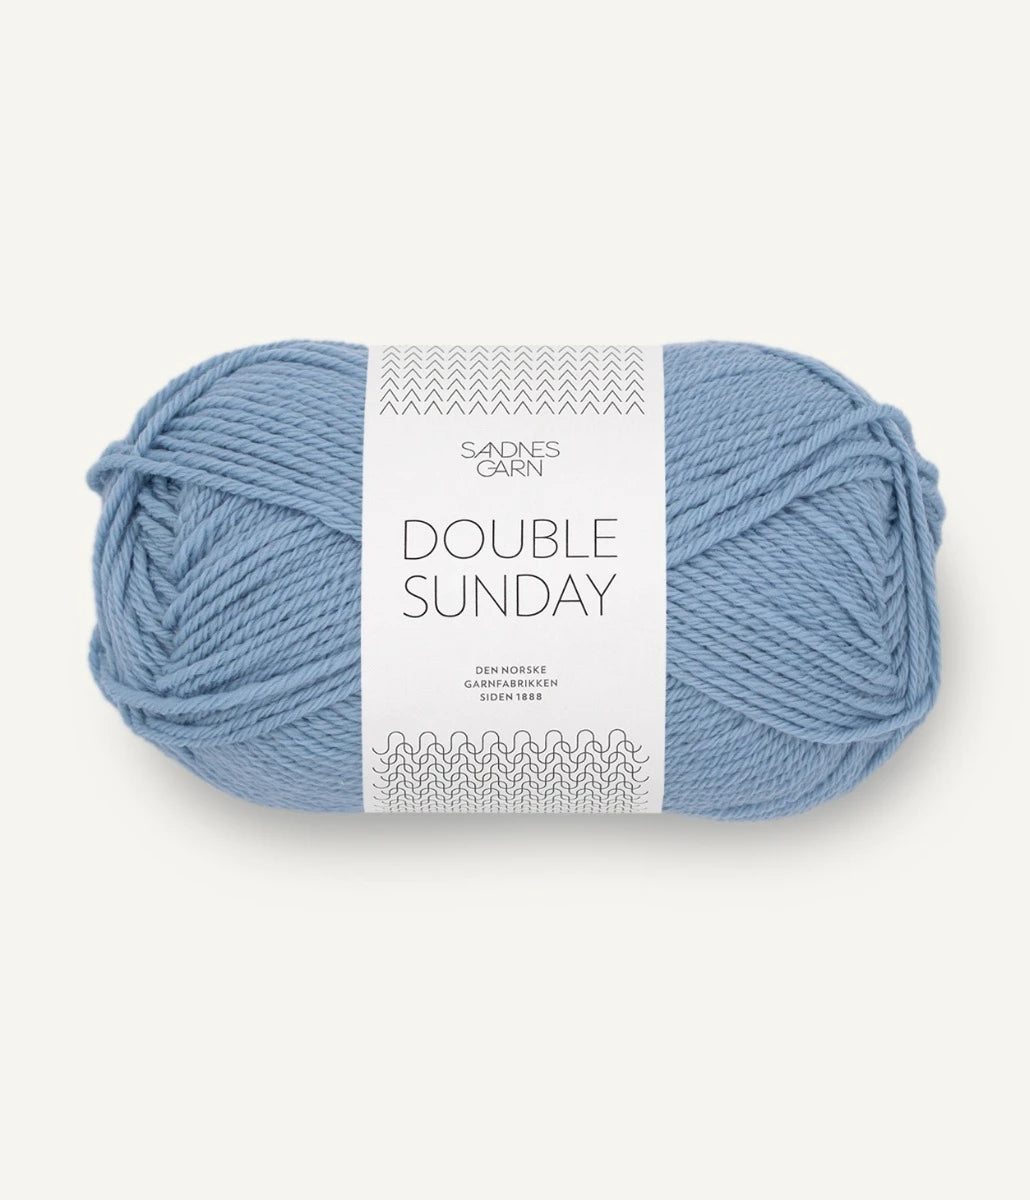 Kuvassa on Sandnes Garn Double Sunday -lanka (yarn) värissä Blå Hortensia.